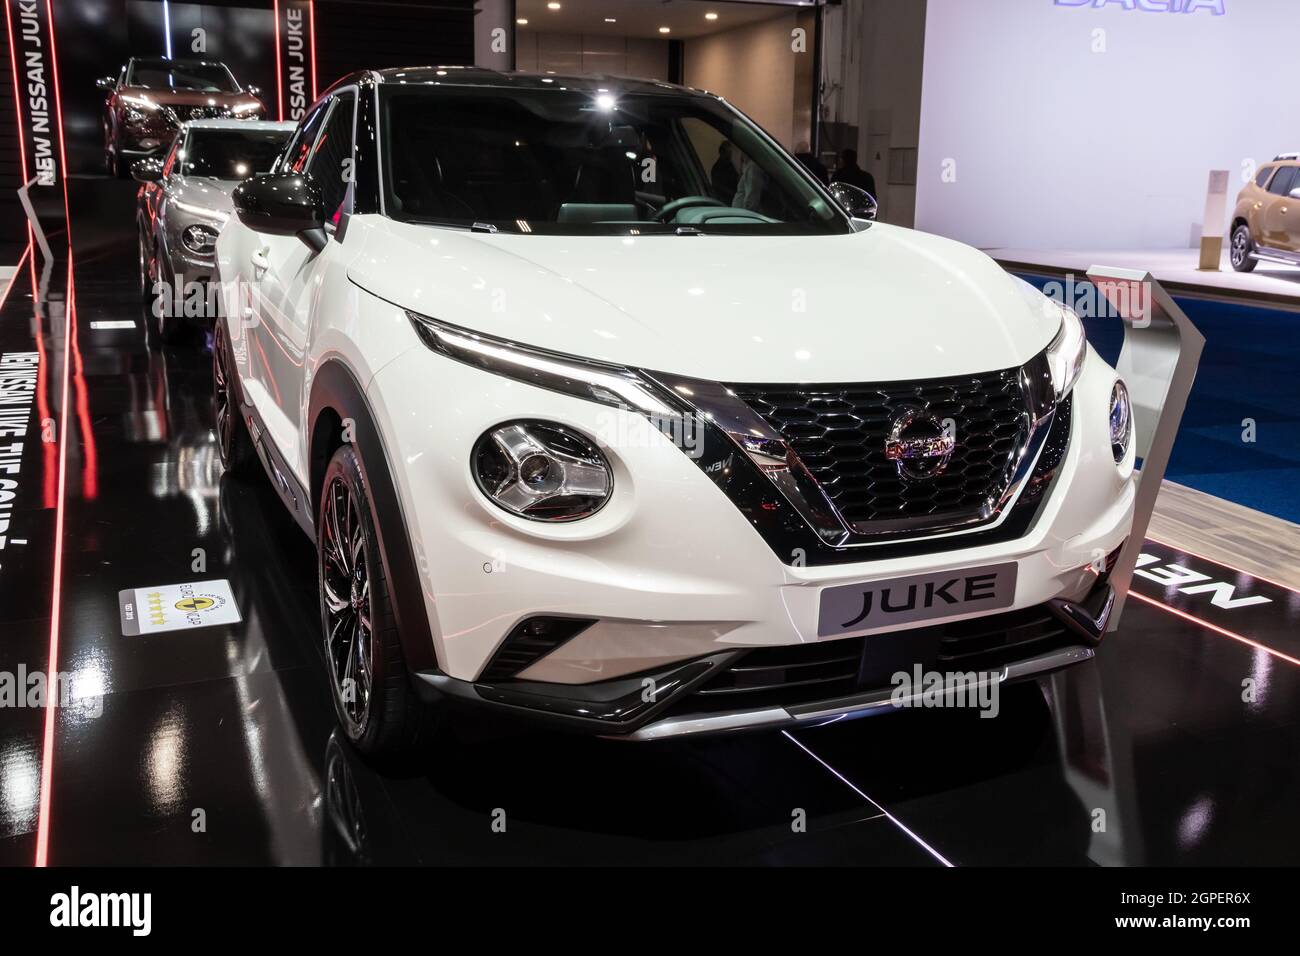 Le modèle de la voiture Nissan Juke est présenté au salon automobile Autosalon 2020. Bruxelles, Belgique - 9 janvier 2020. Banque D'Images